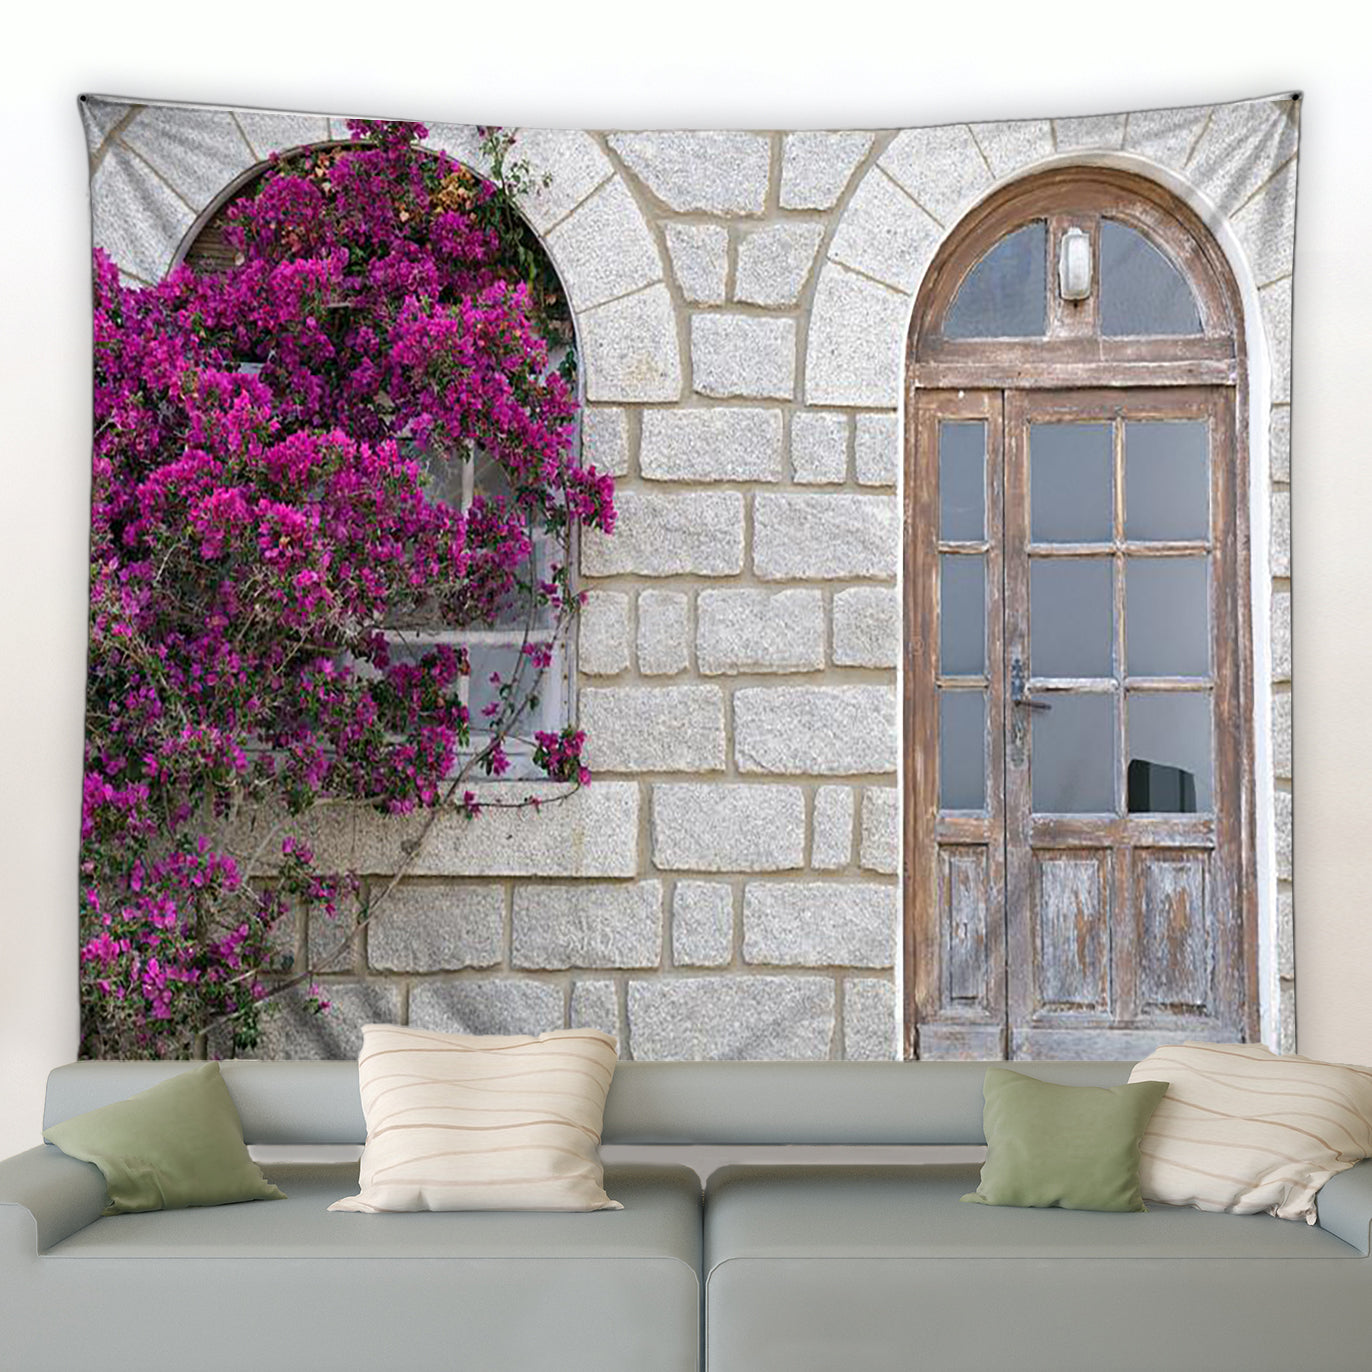 Stone Building With Window And Door Garden Tapestry - Clover Online